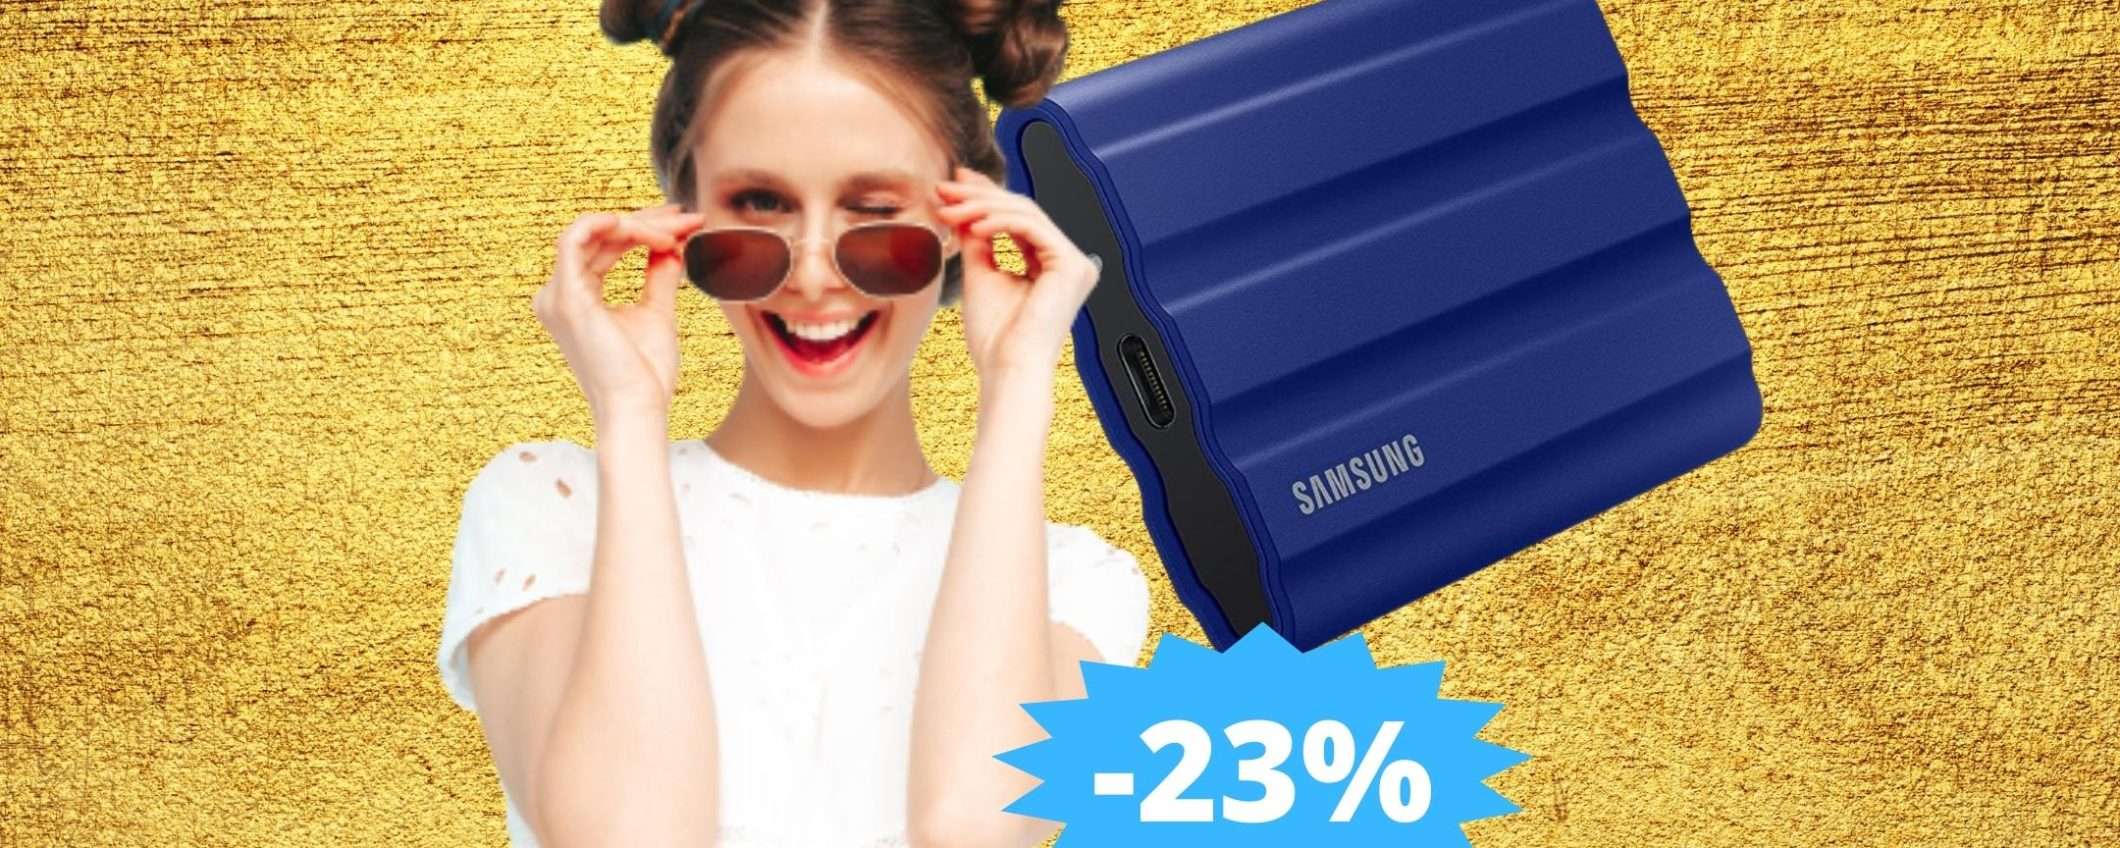 SSD Samsung Memorie T7: l'affare del momento su Amazon (-23%)